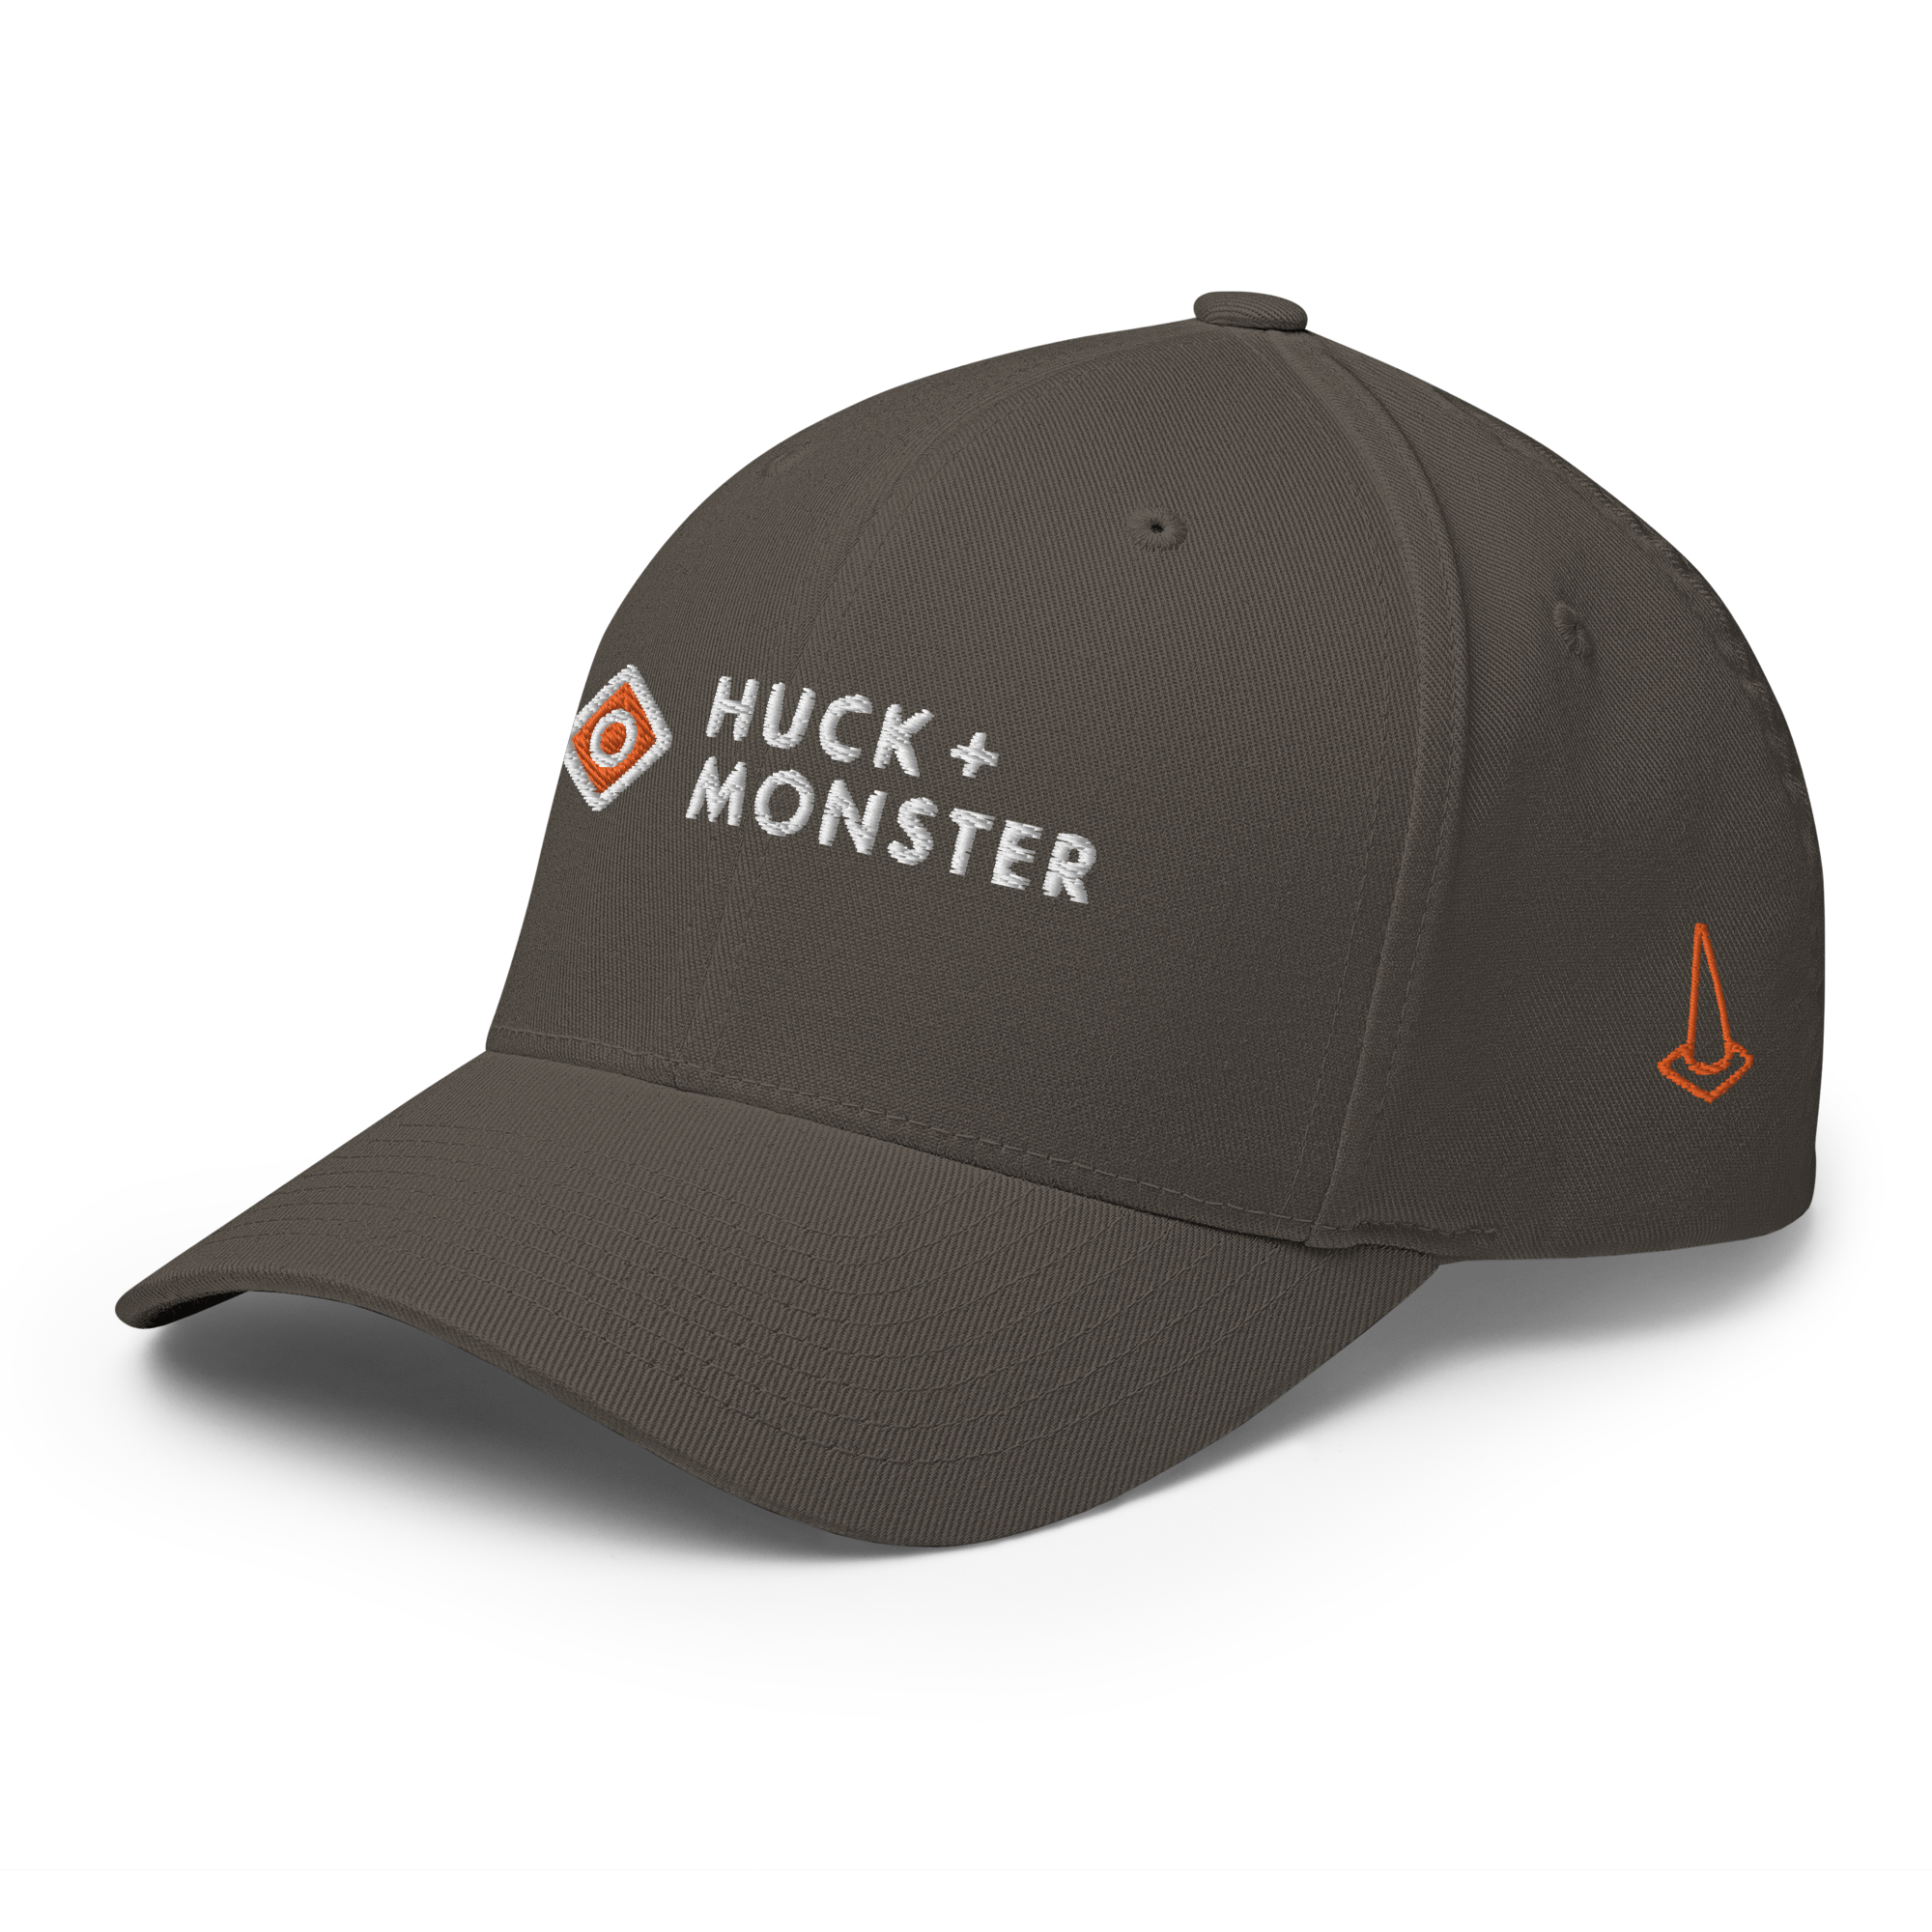 Player Cap Monster + Huck